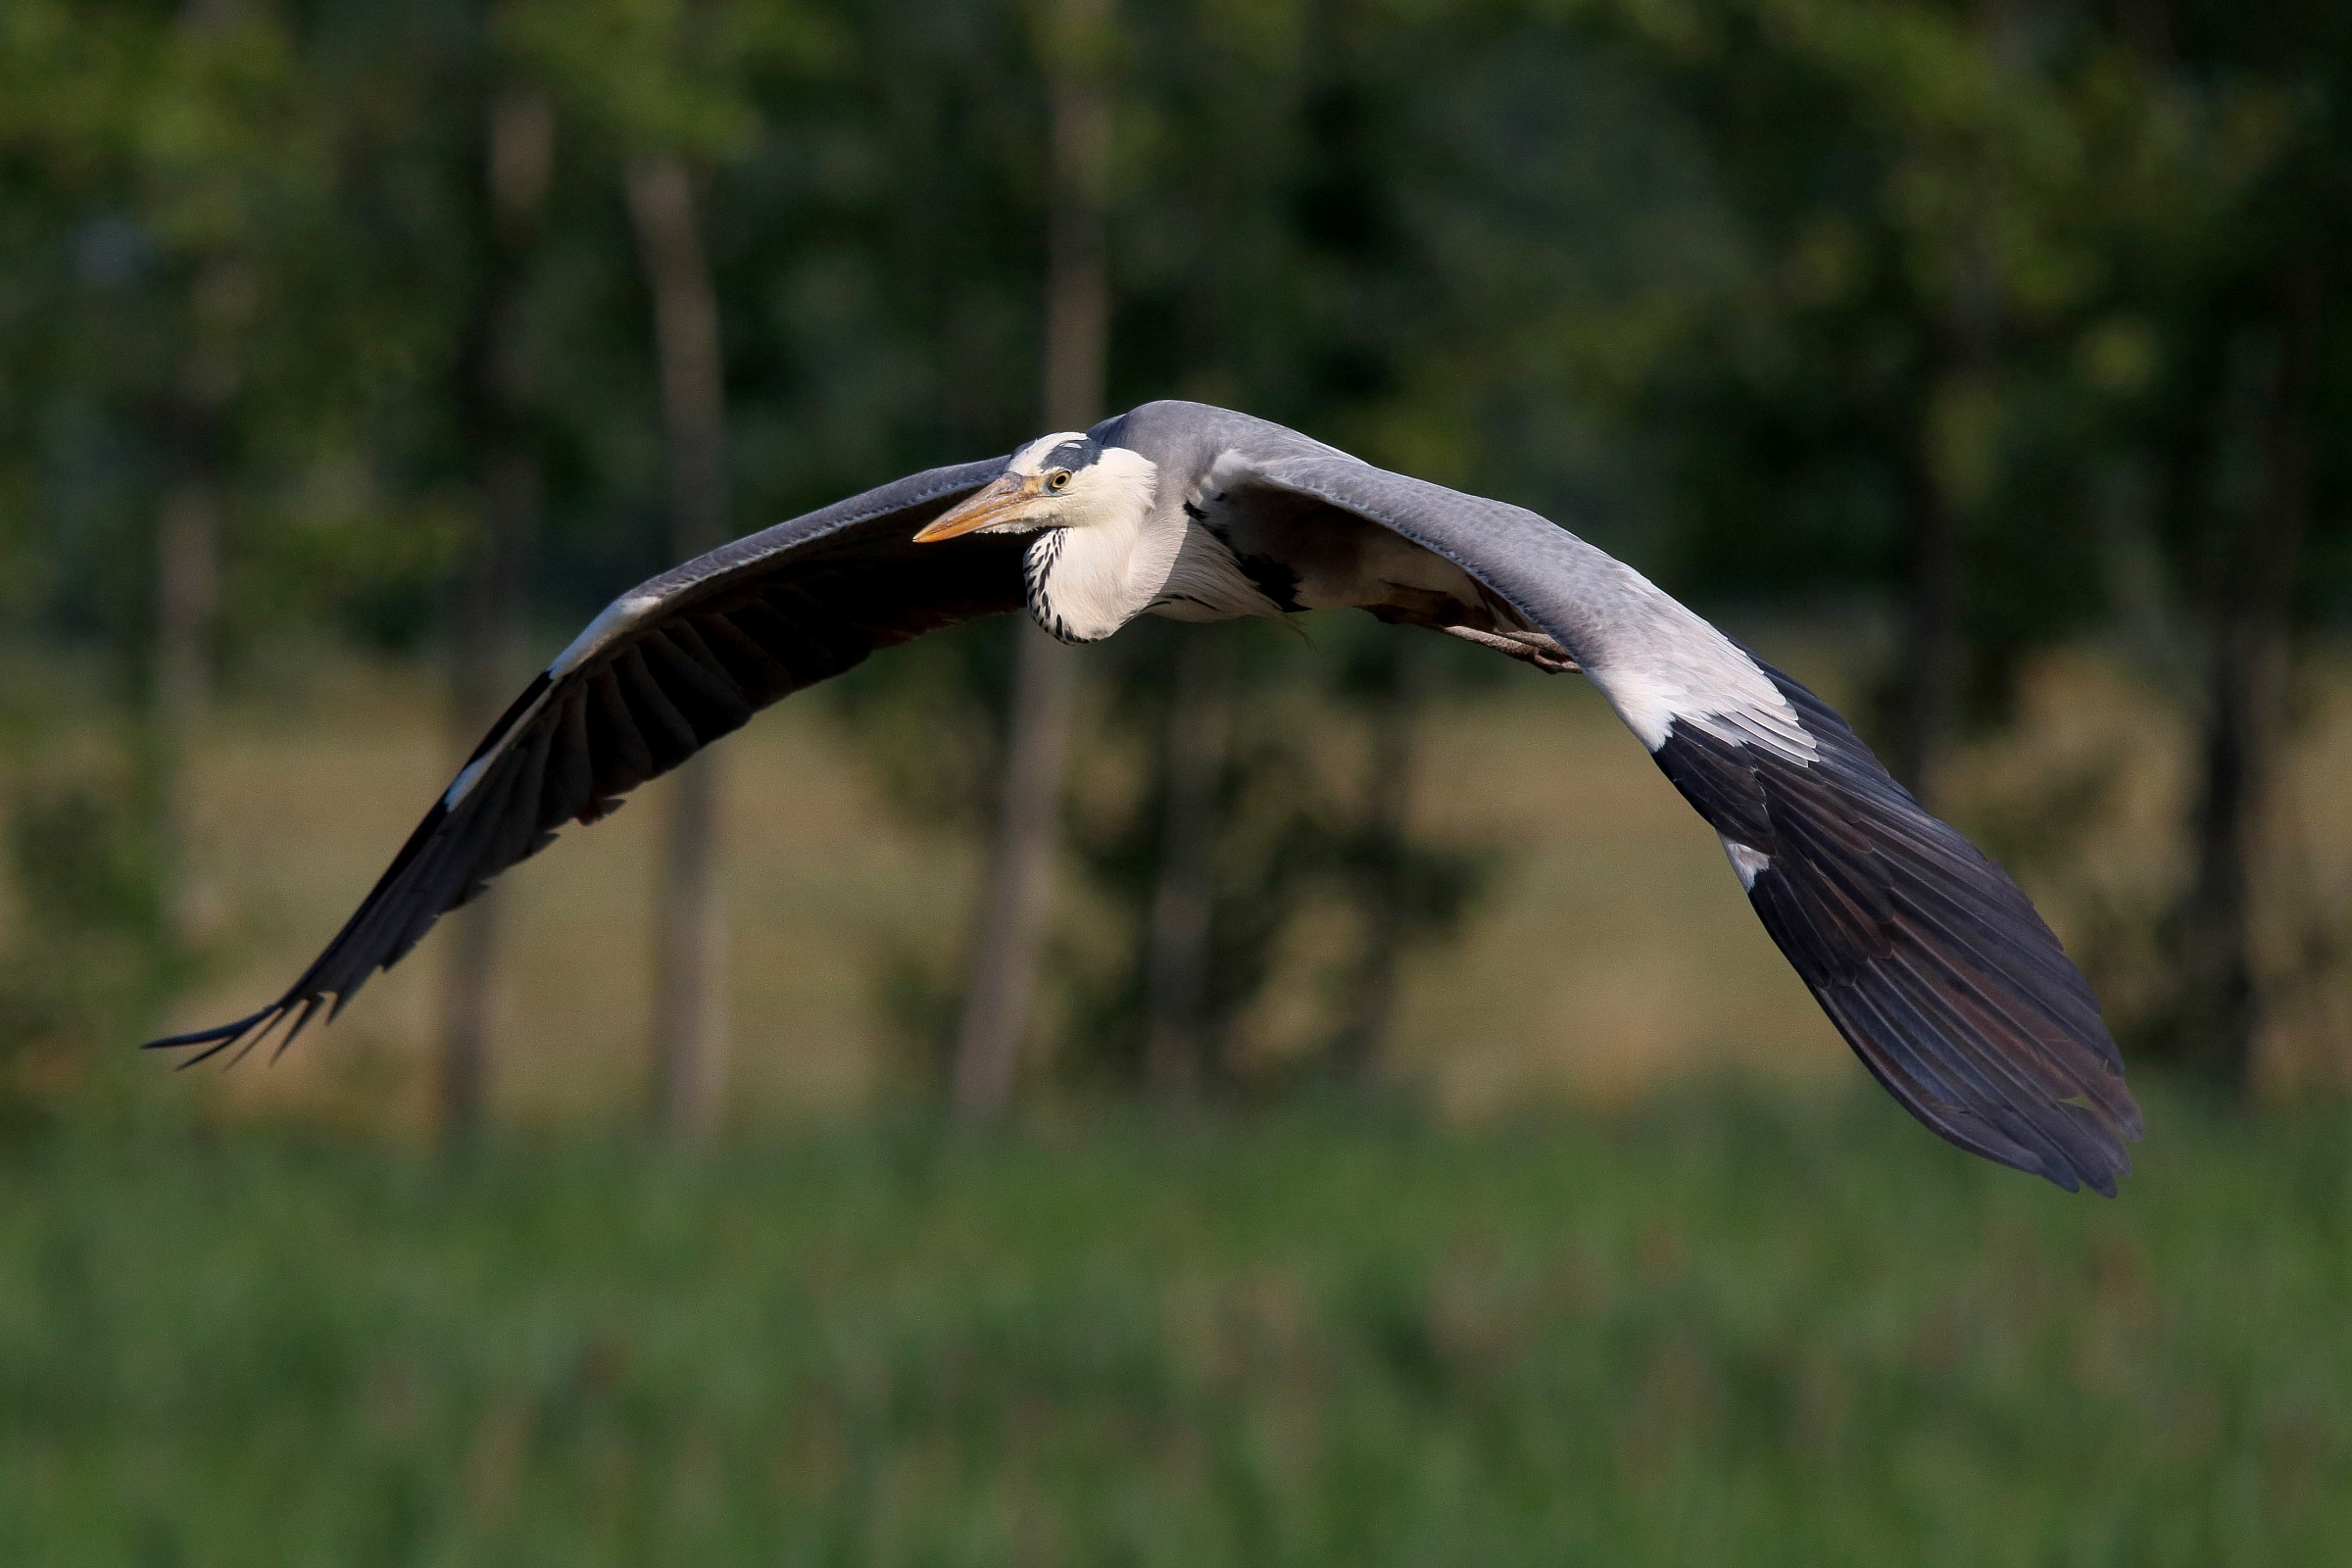 Heron in flight...